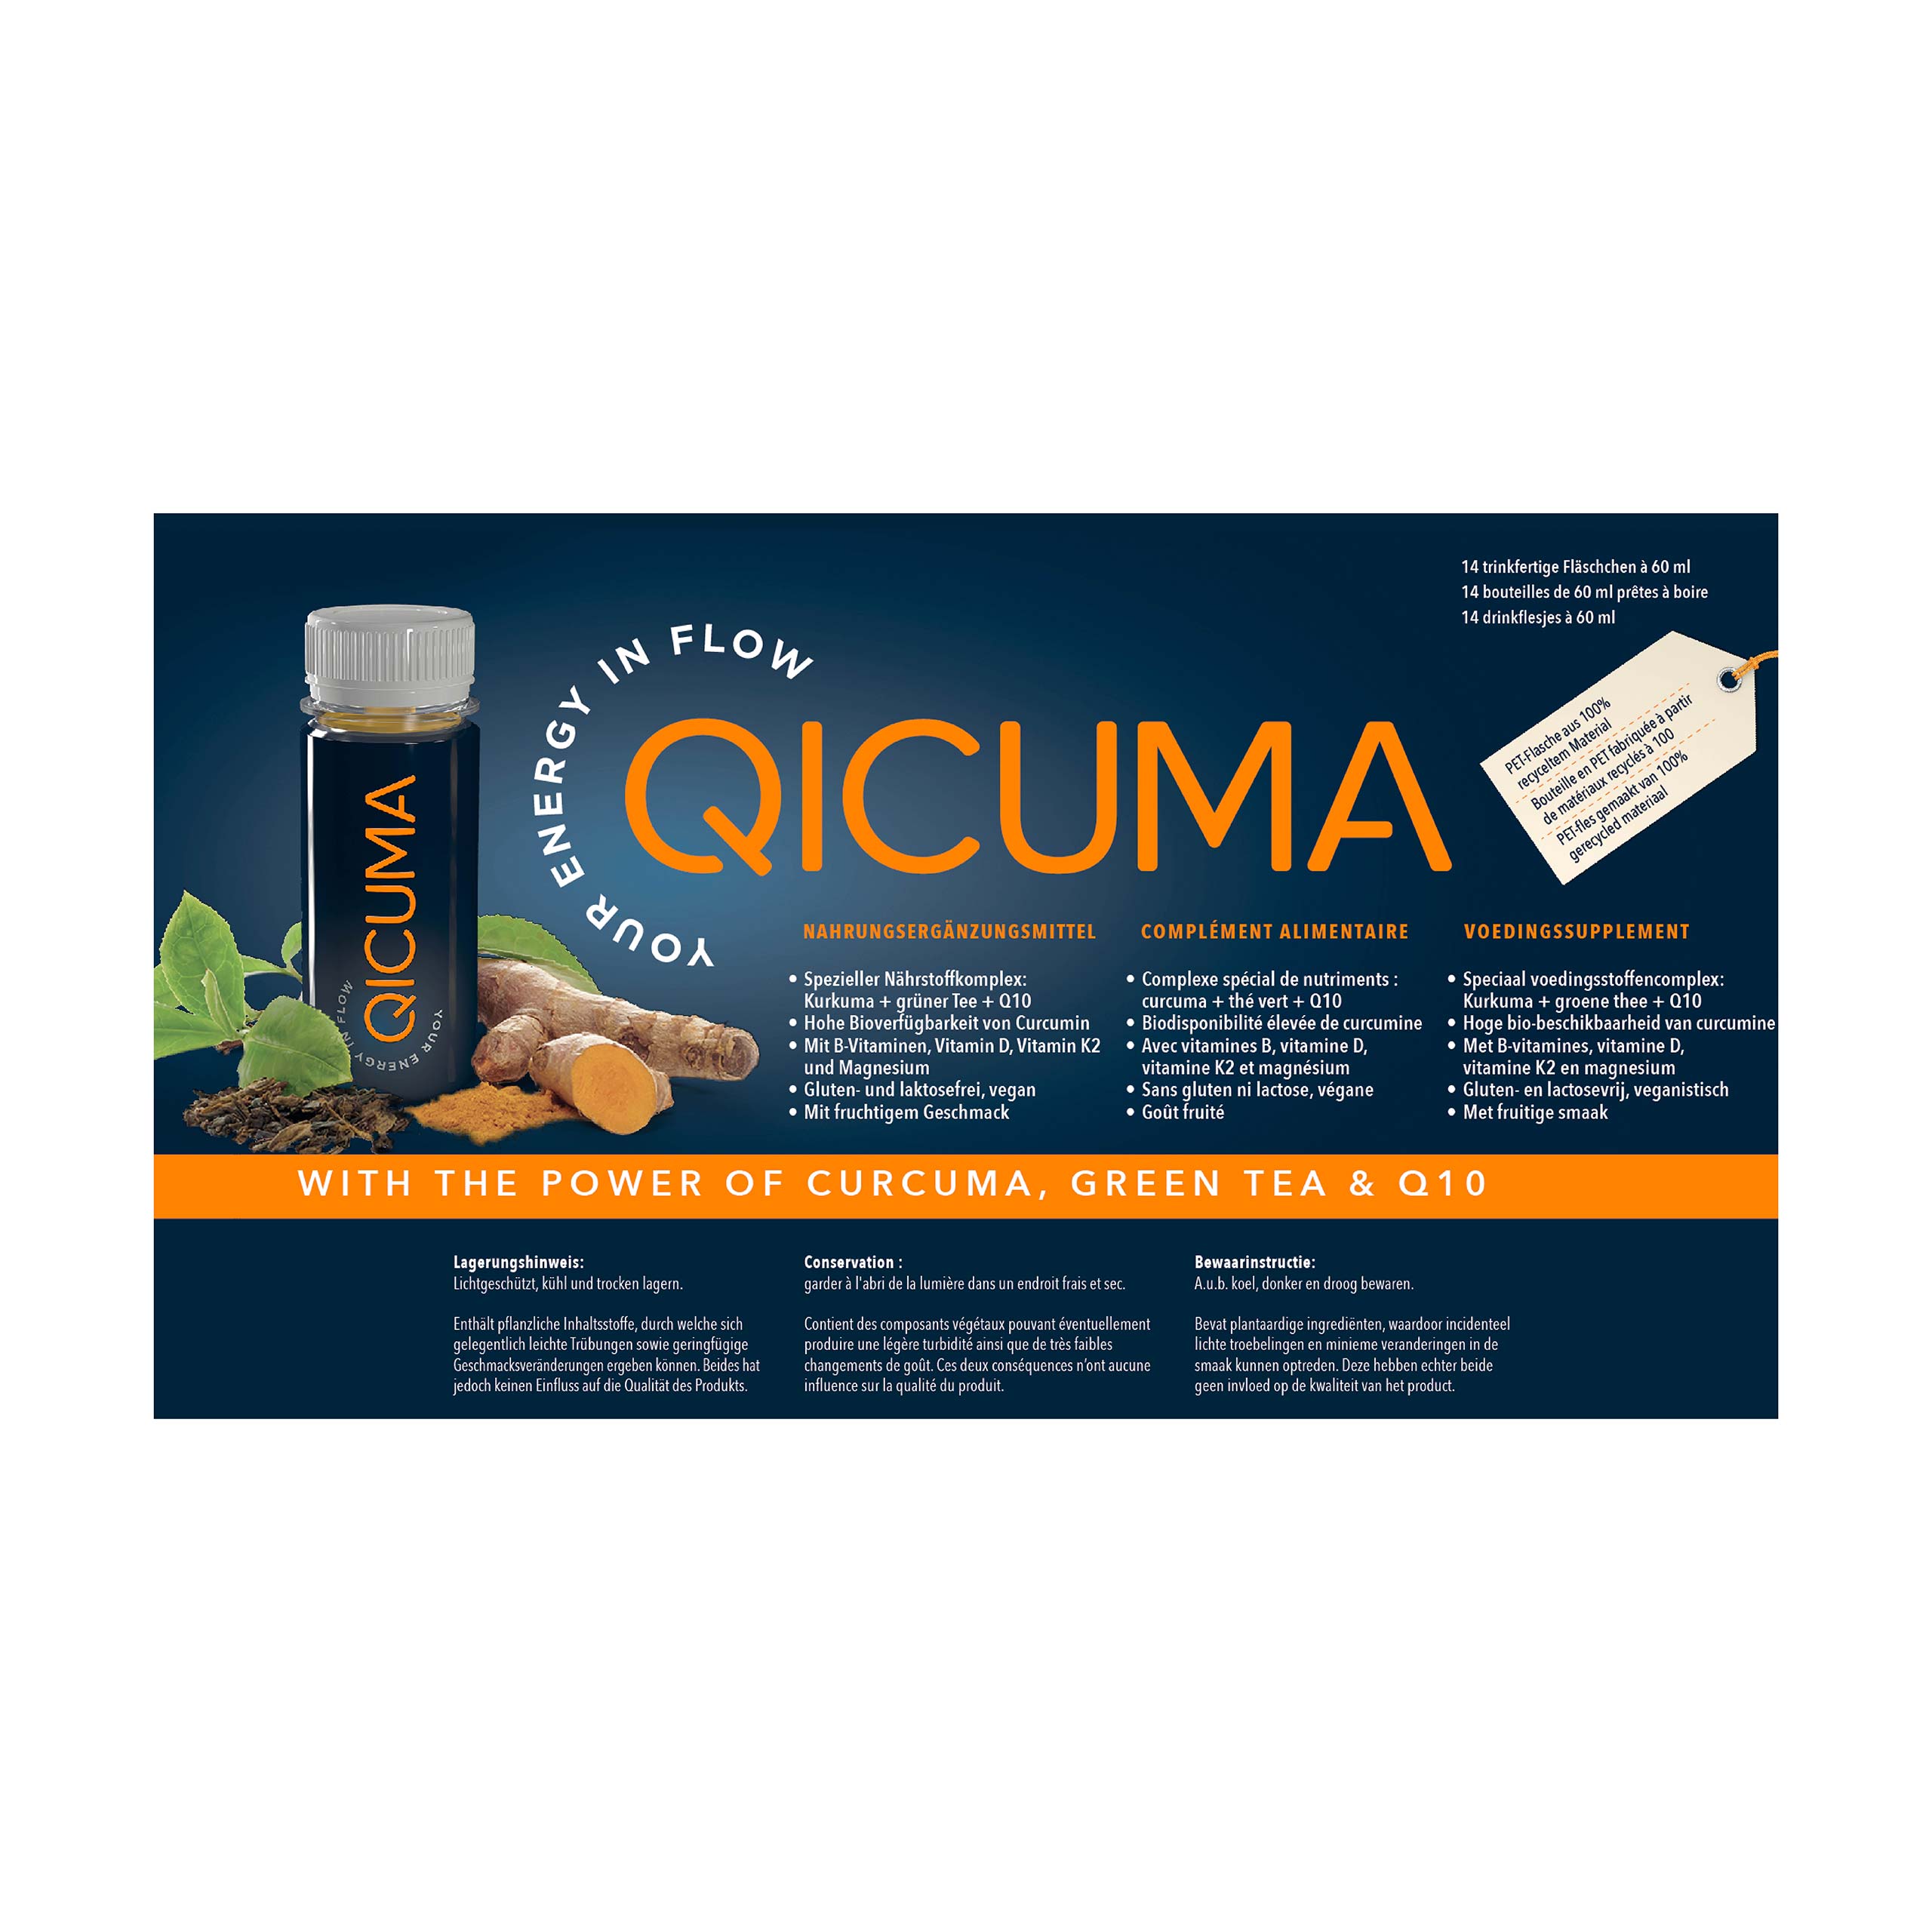 Paquete de 2 semanas QICUMA – Complemento nutricional con extractos de plantas, colina, Q10, magnesio, zinc y vitaminas, 14 x 60 ml